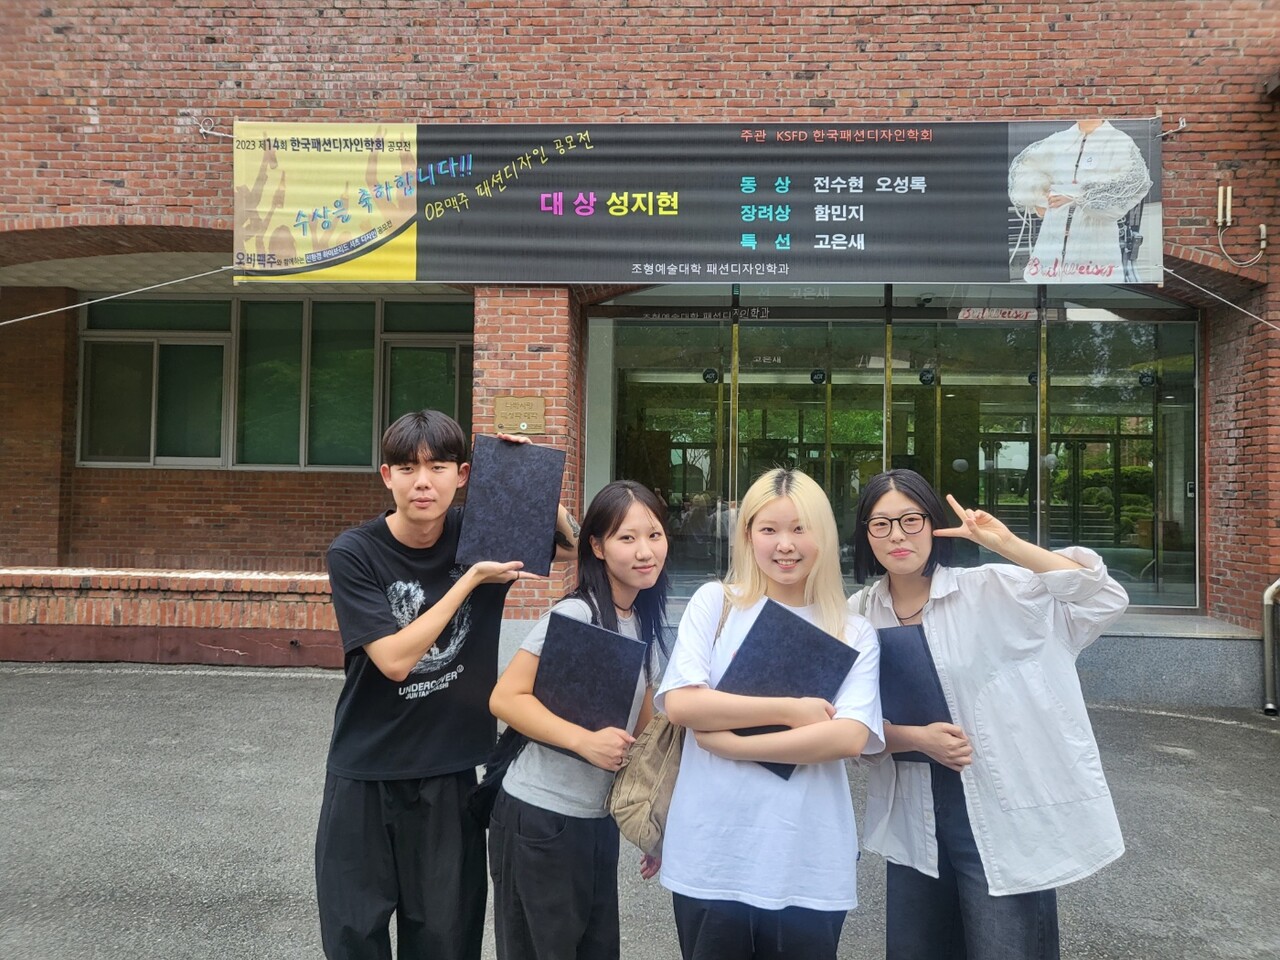 한국패션디자인학회 공모전에서 수상한 대구대 패션디자인학과 학생들(왼쪽부터 오성록, 전수현, 성지현, 함민지 학생)